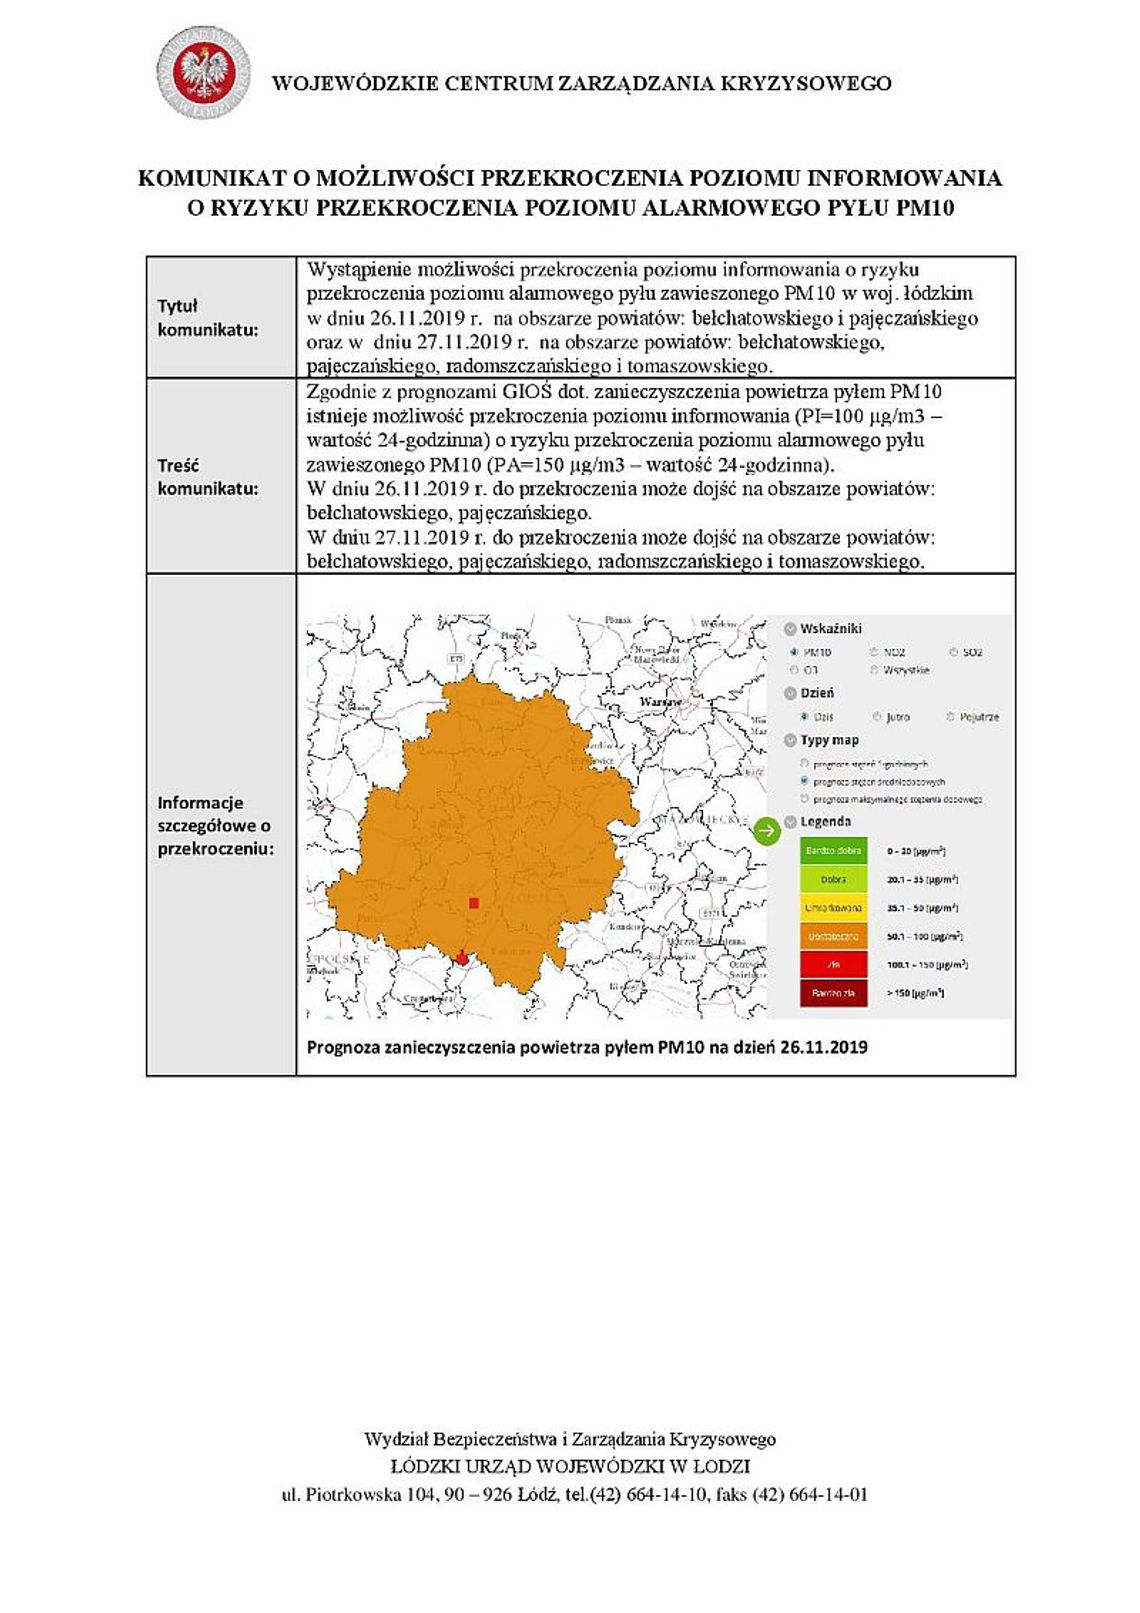 Przekroczenie poziomu alarmowego pyłu PM10